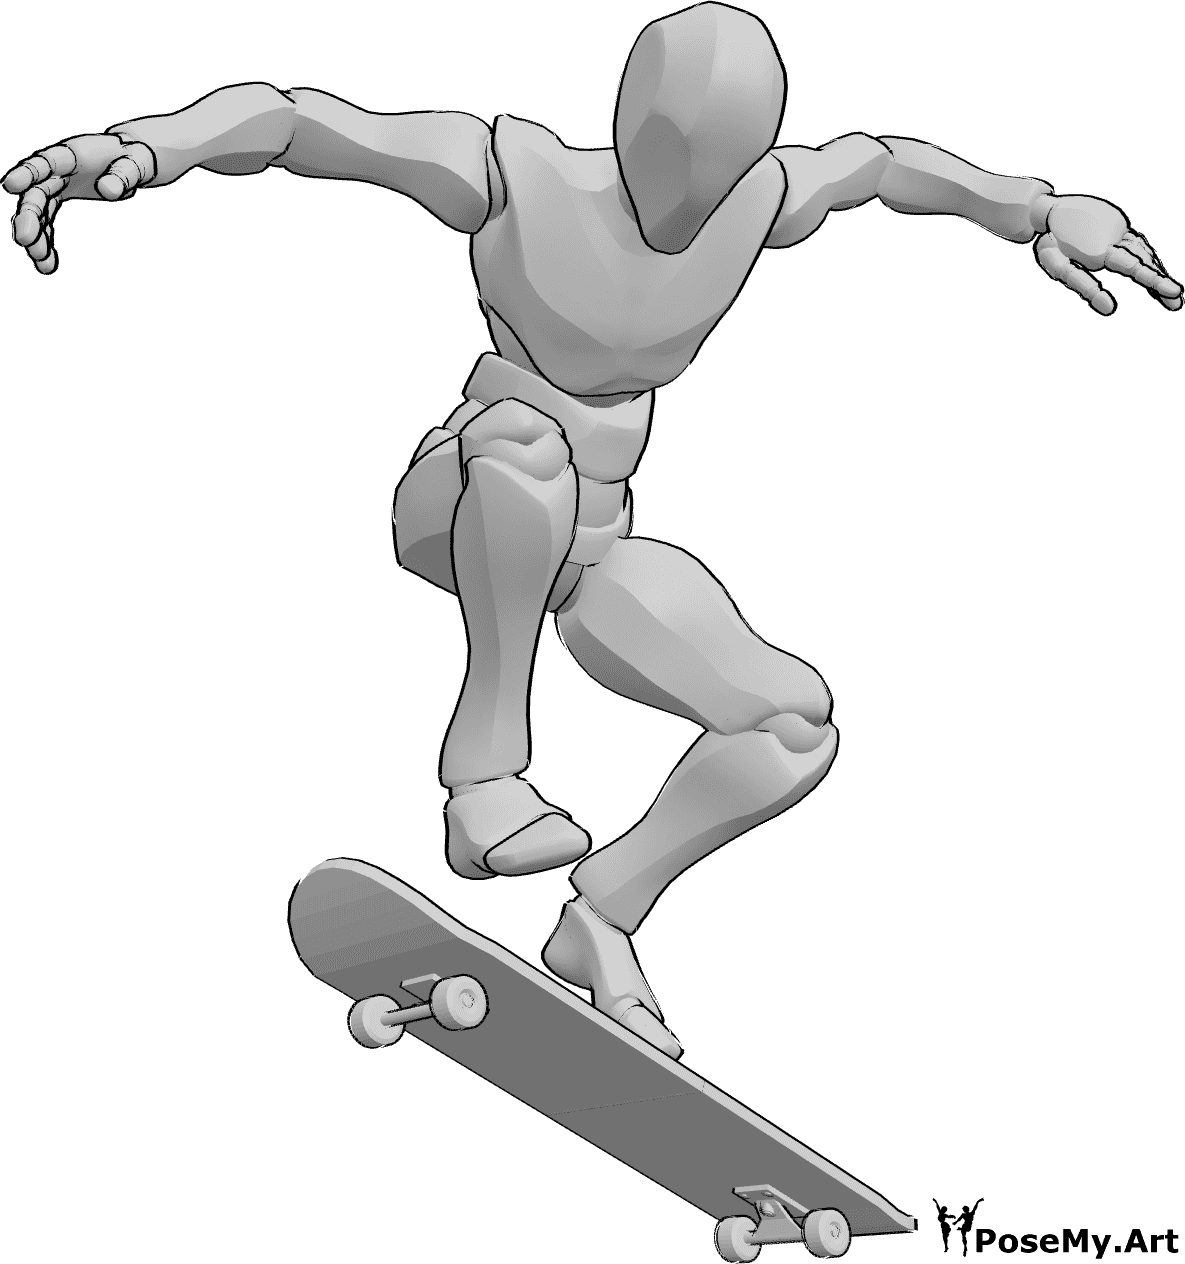 Référence des poses- Pose de kickflip en skateboard - L'homme fait du skateboard, en faisant un kickflip dans les airs, référence de dessin de skateboard.